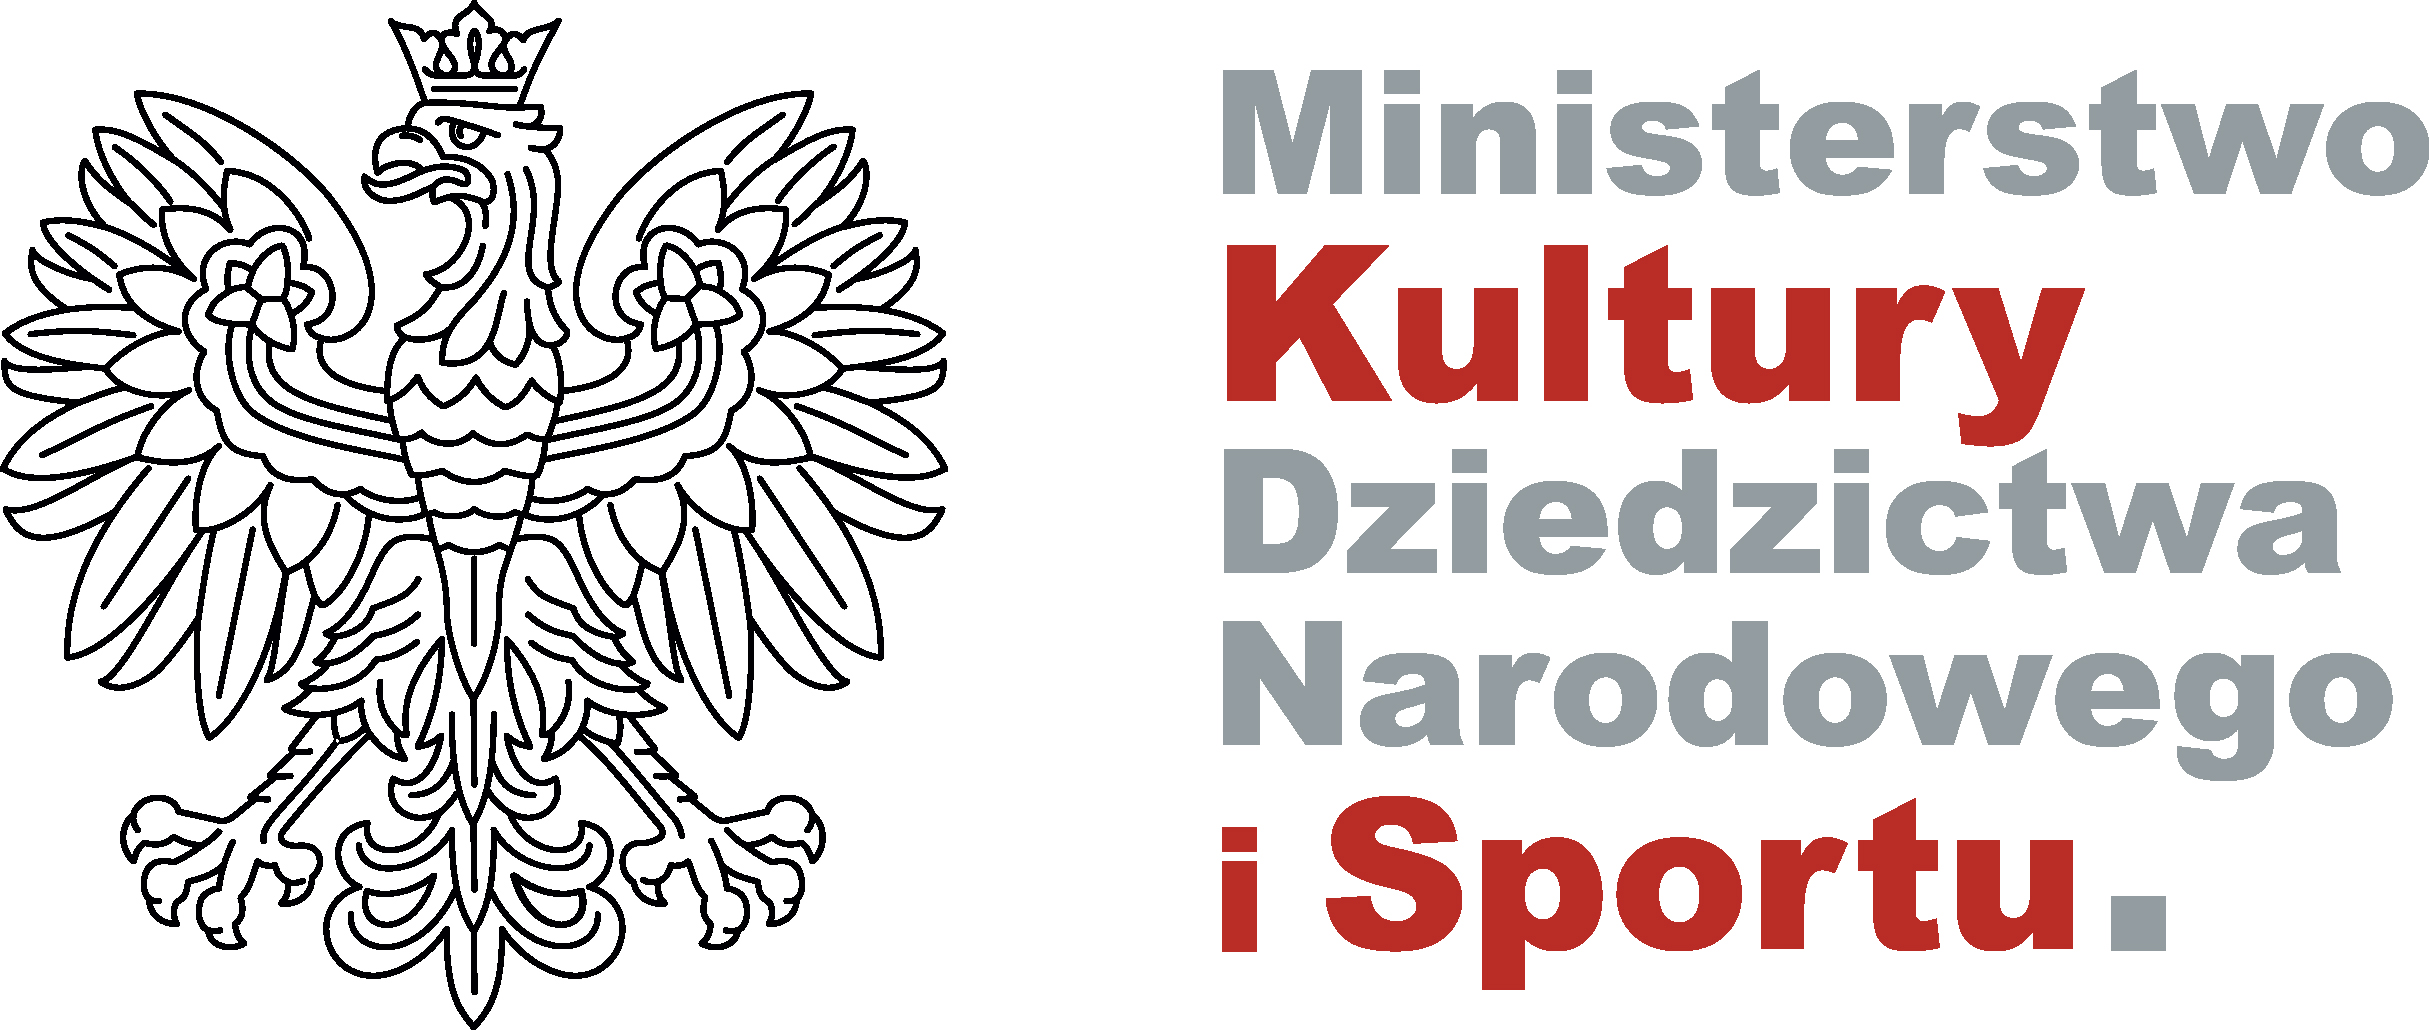 logo ministerstwa kultury, dziedzictwa narodowego i sportu